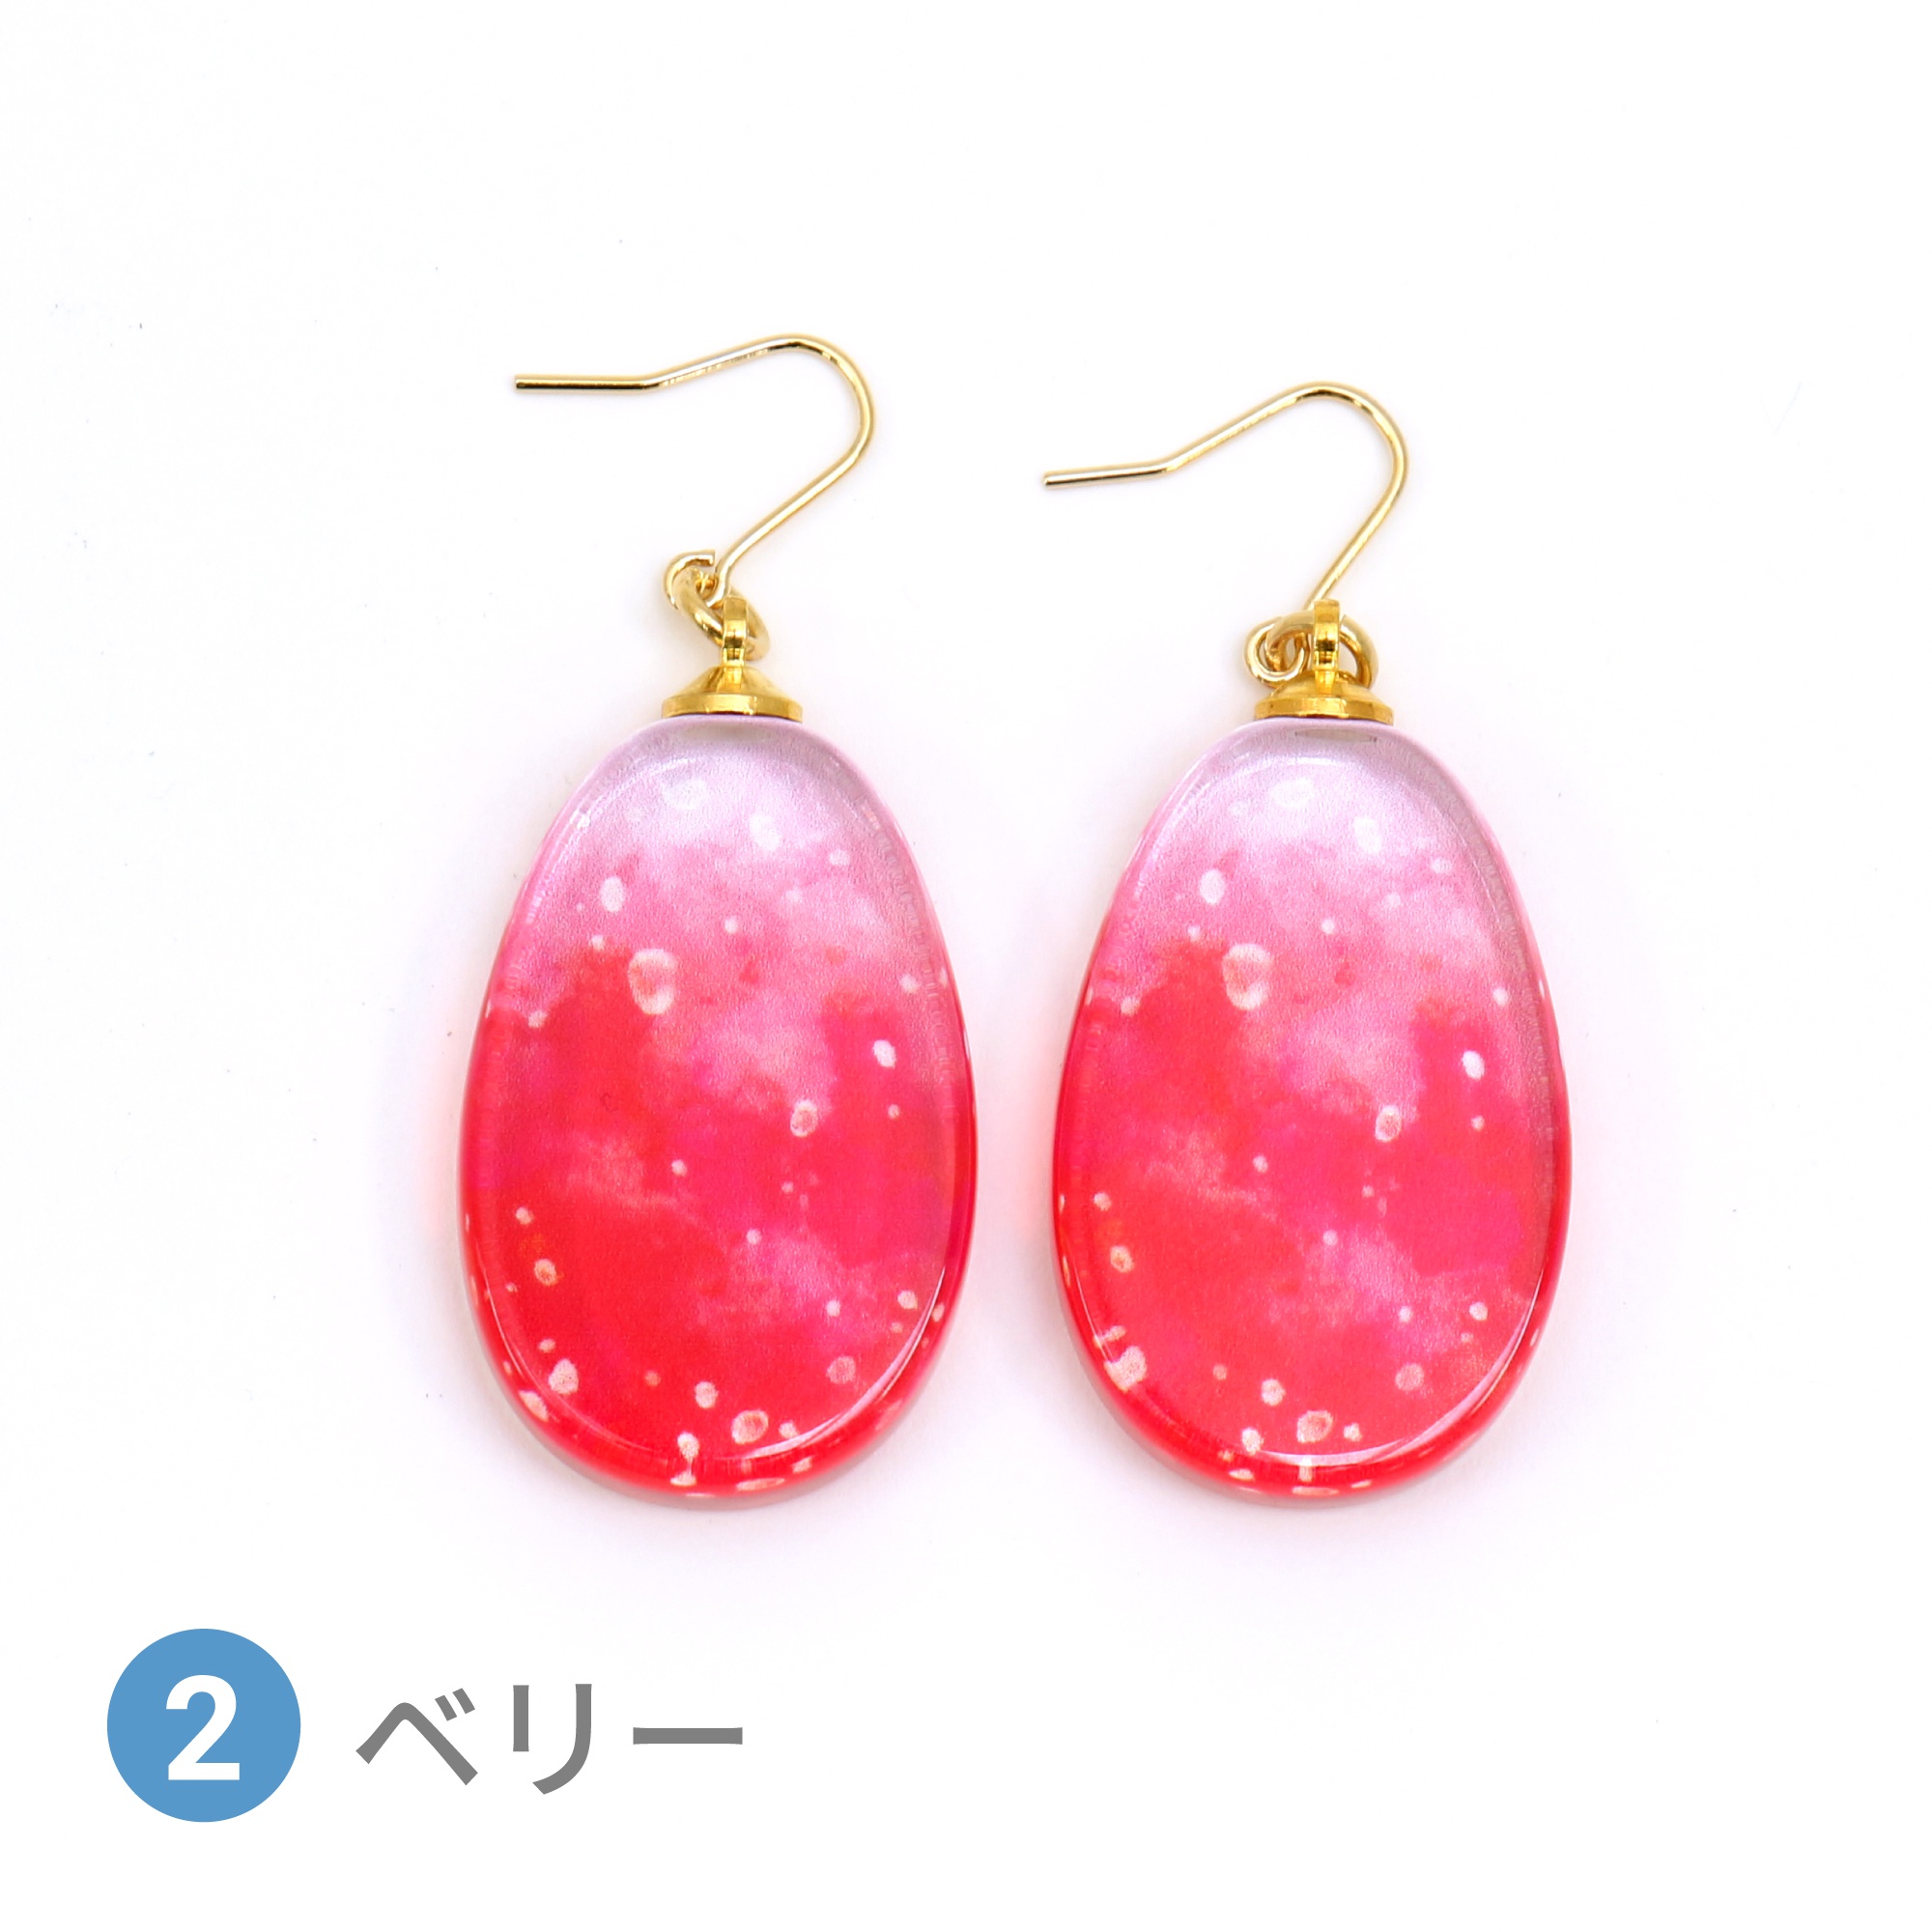 Glass accessories Pierced Earring SODA berry drop shape